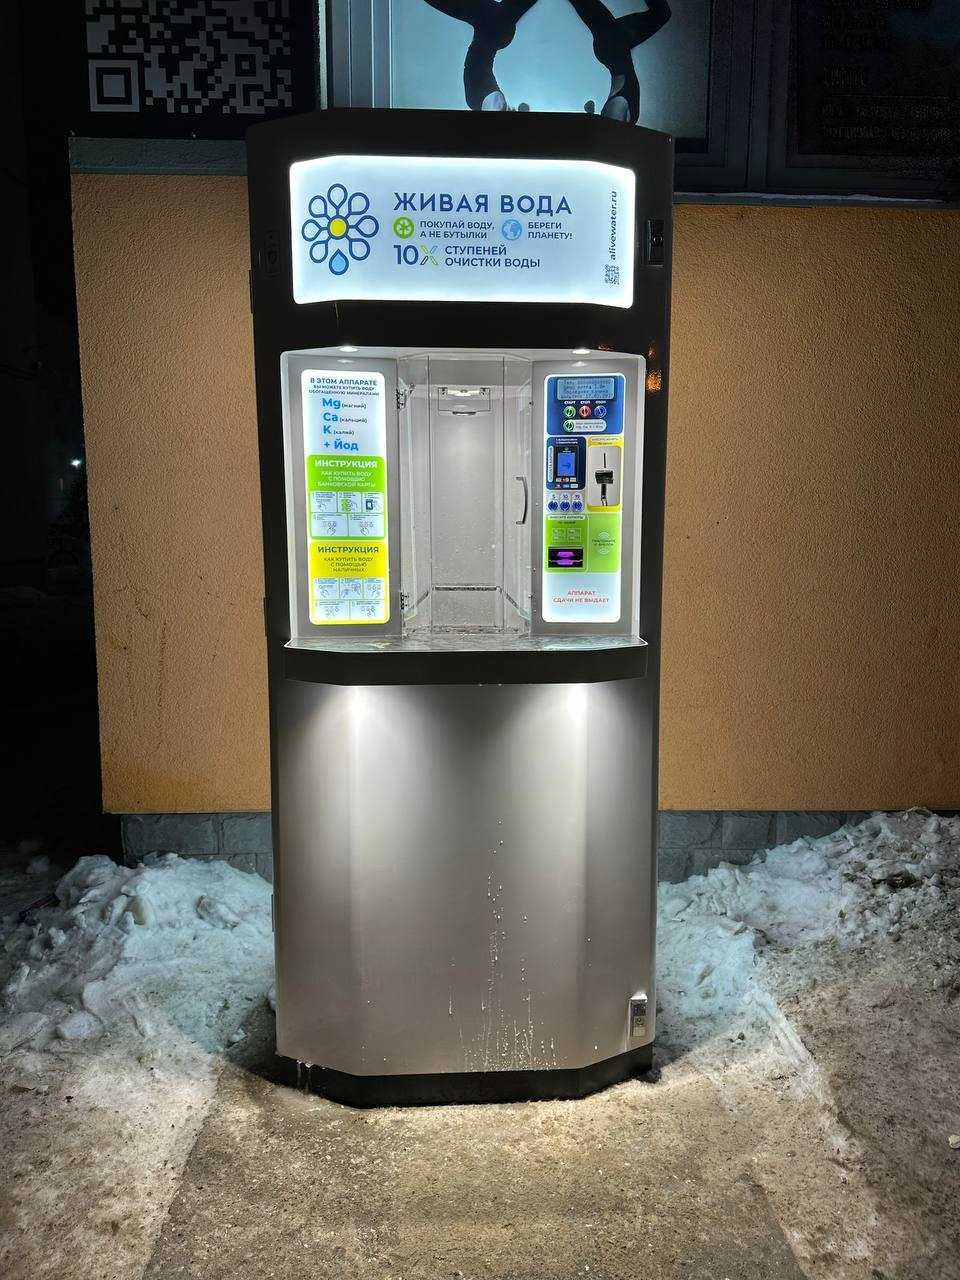 Живая вода  вендинговые аппараты (автоматы, водомат) по продаже  воды